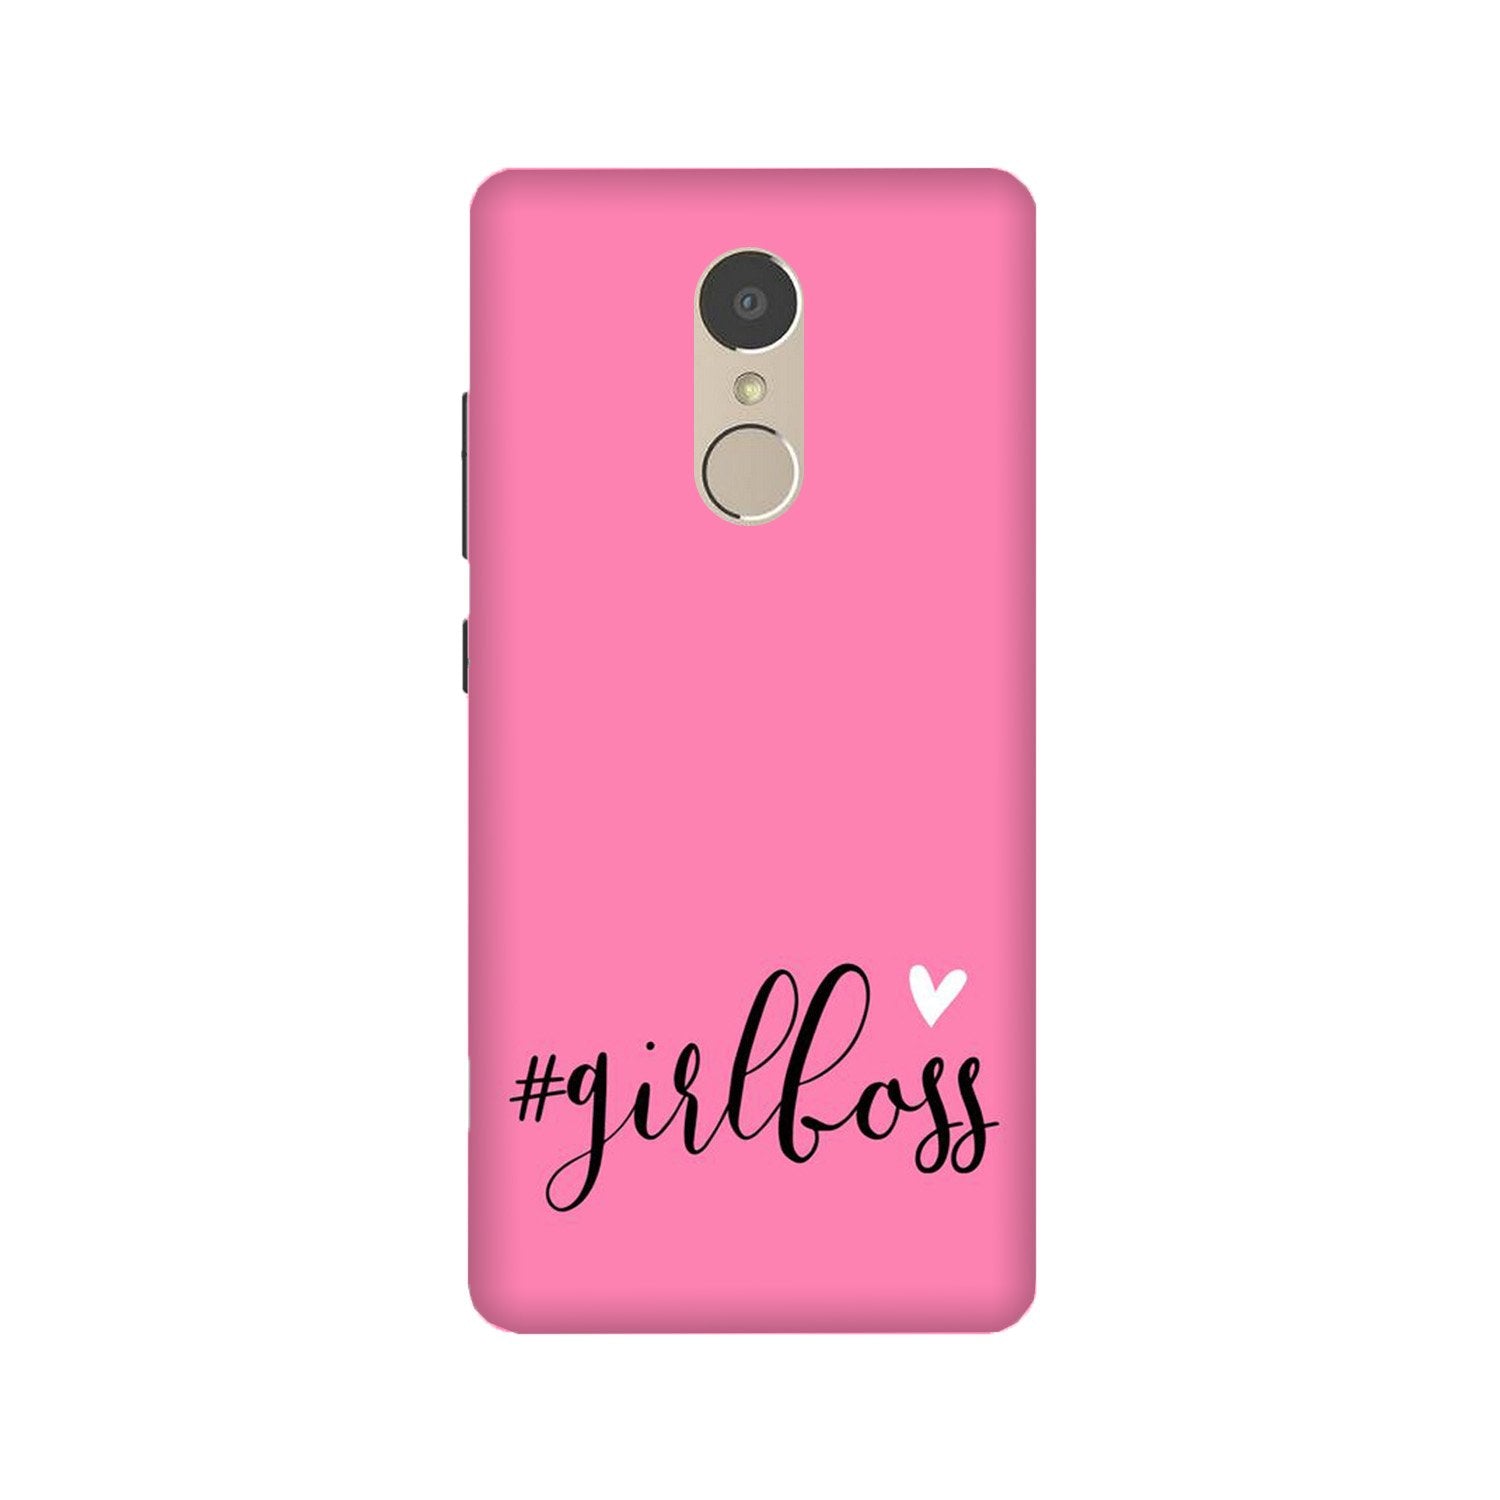 Girl Boss Pink Case for Lenovo K6 Note (Design No. 269)